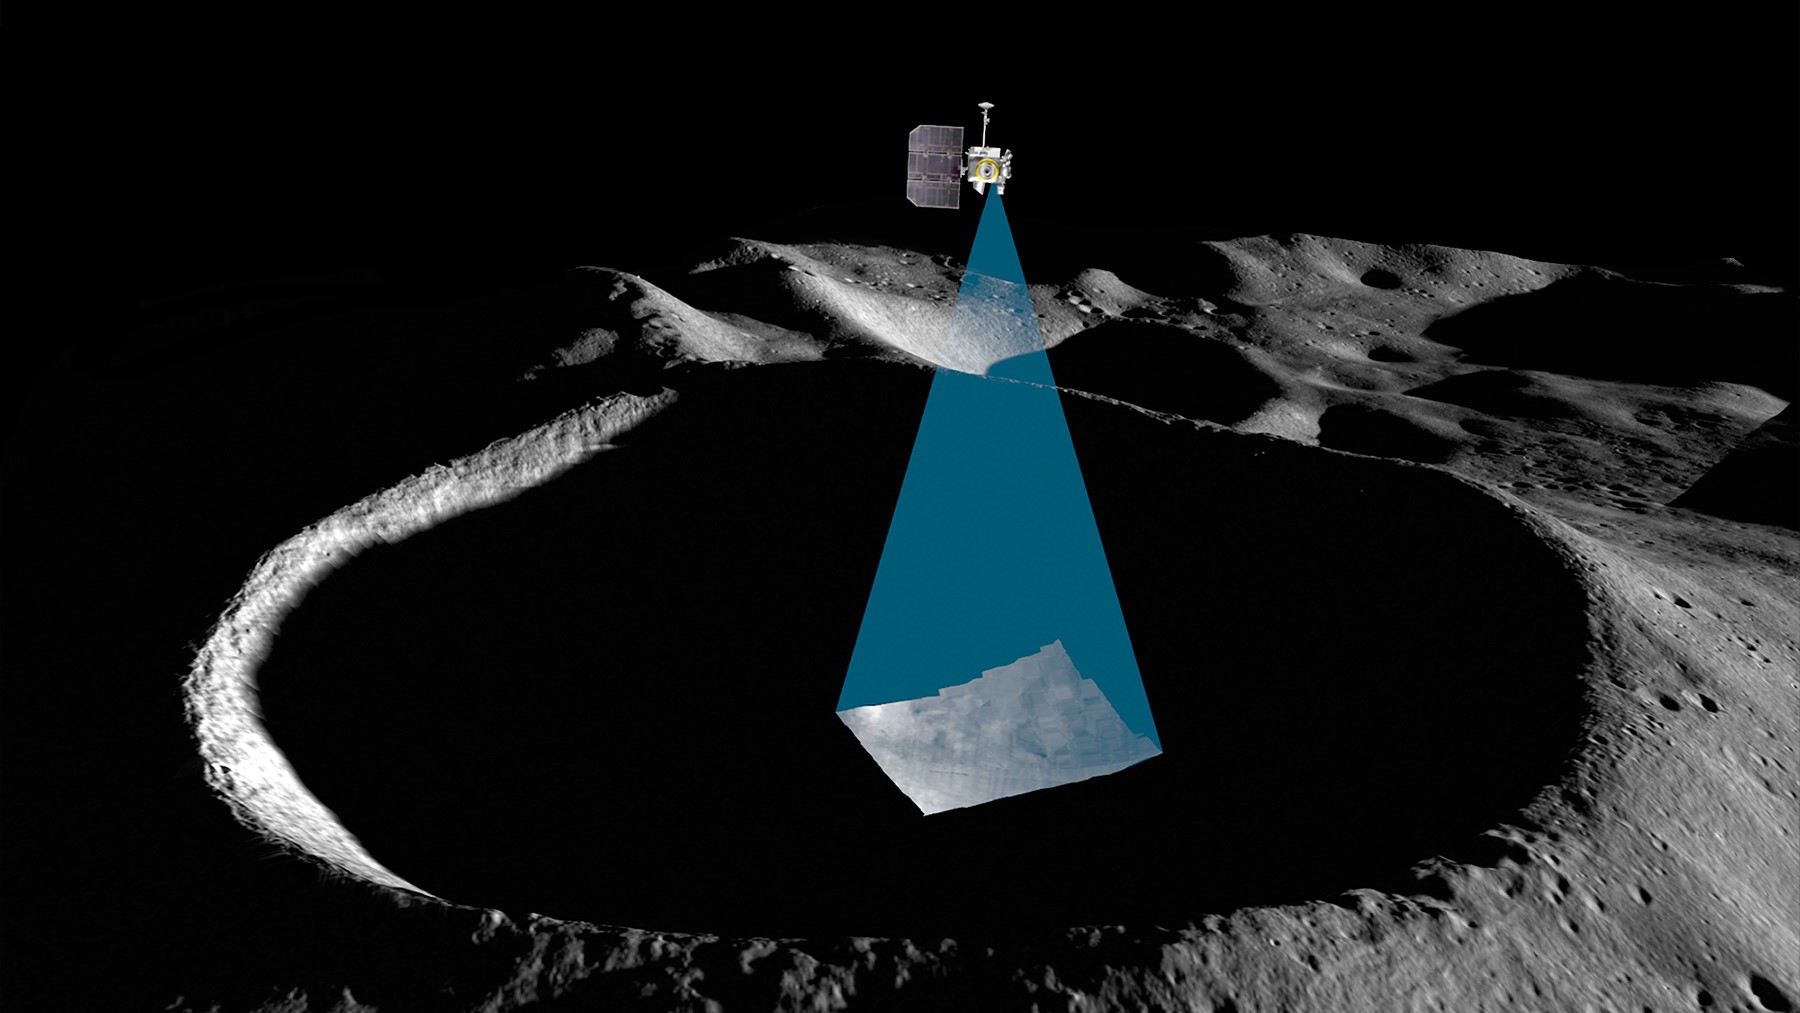 Kunstenaarsillustratie die een ruimtevaartuig toont dat een donkere maankrater scant en het oppervlak ervoor verlicht.